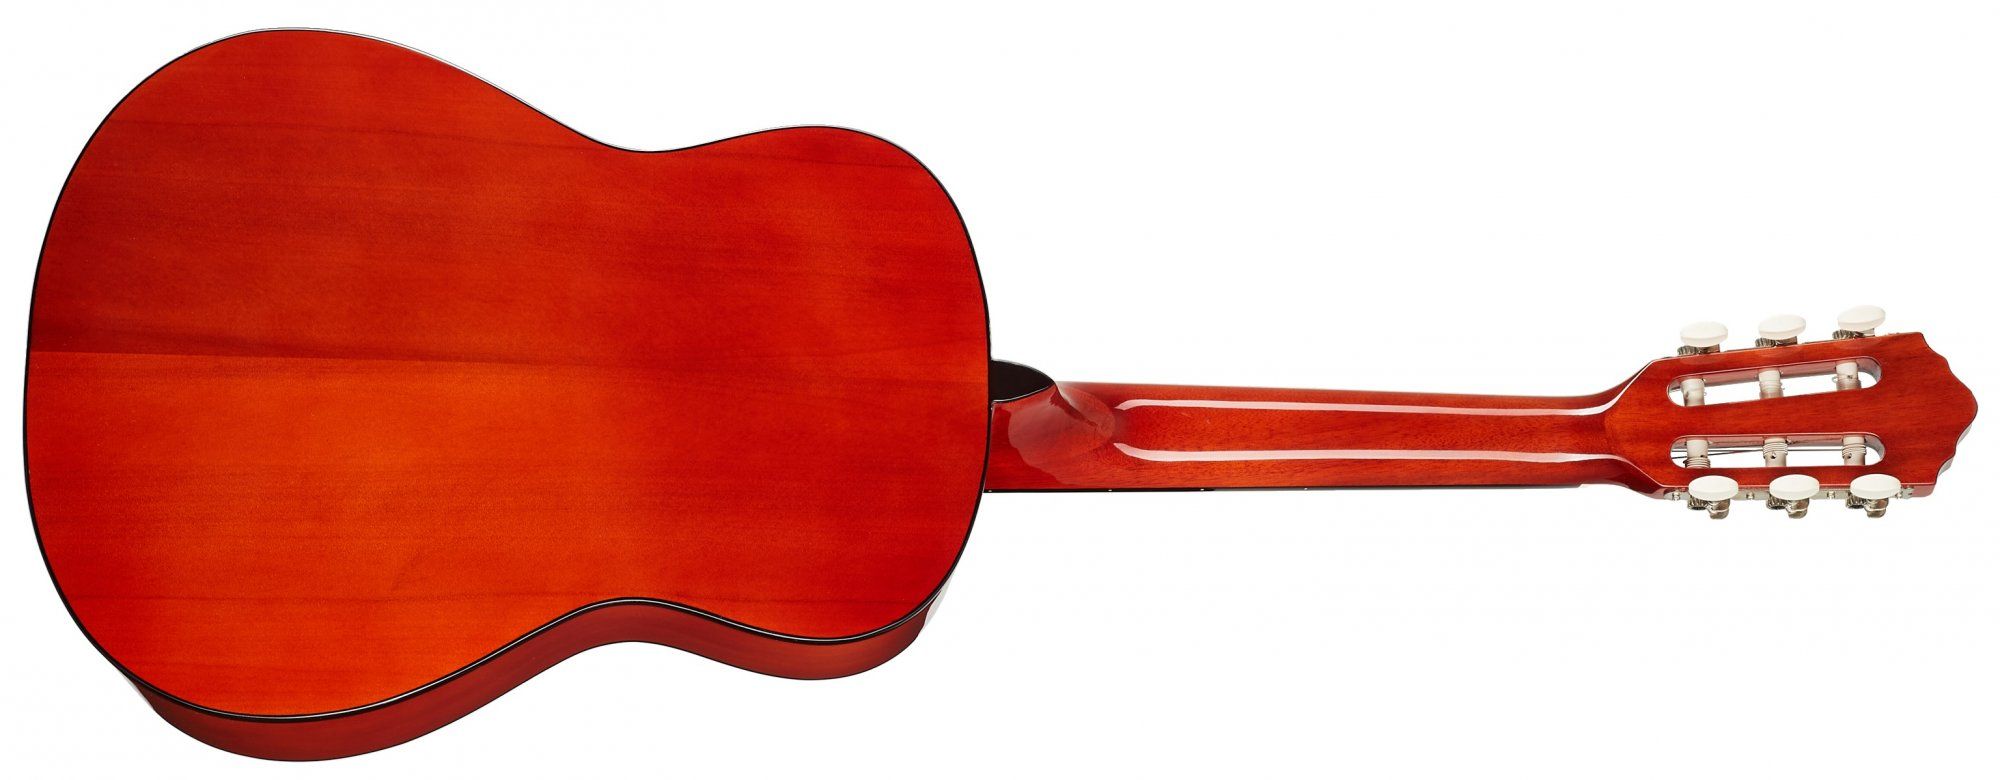  krásná akustická kytara oscar schmidt menzura 559 mm vrstvený korpus lesklá povrchová úprava vhodná pro hru trsátky i prsty 